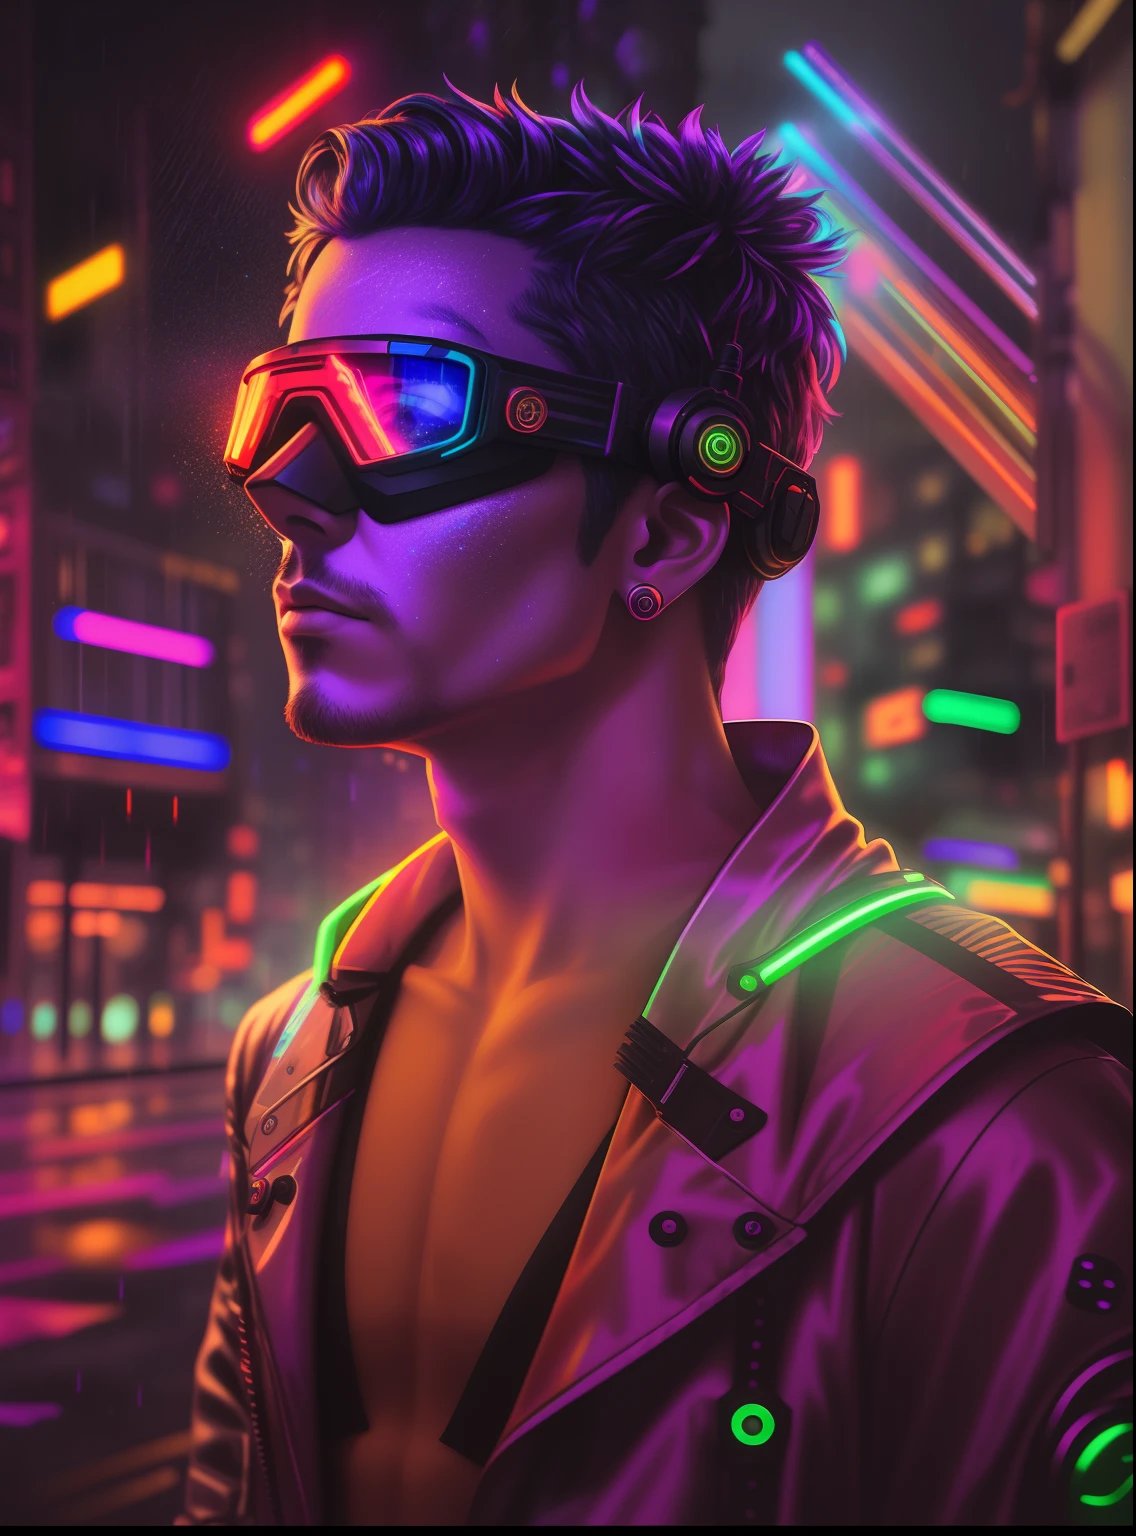 Uma premiada foto de obra-prima de um homem ciborgue com cores psicodélicas parado em uma rua da cidade à noite na chuva, usando óculos brilhantes de cor neon, 8K, (alta qualidade:1.1), (Sensação cinematográfica:1.1), sombras escuras e profundas, detalhes incrivelmente intrincados, arte , (de perto:1.1), de cima, olhando para o espectador, (brilhos de luz:1.1), (Aberração cromática,:1.2) background with floating light arteifacts